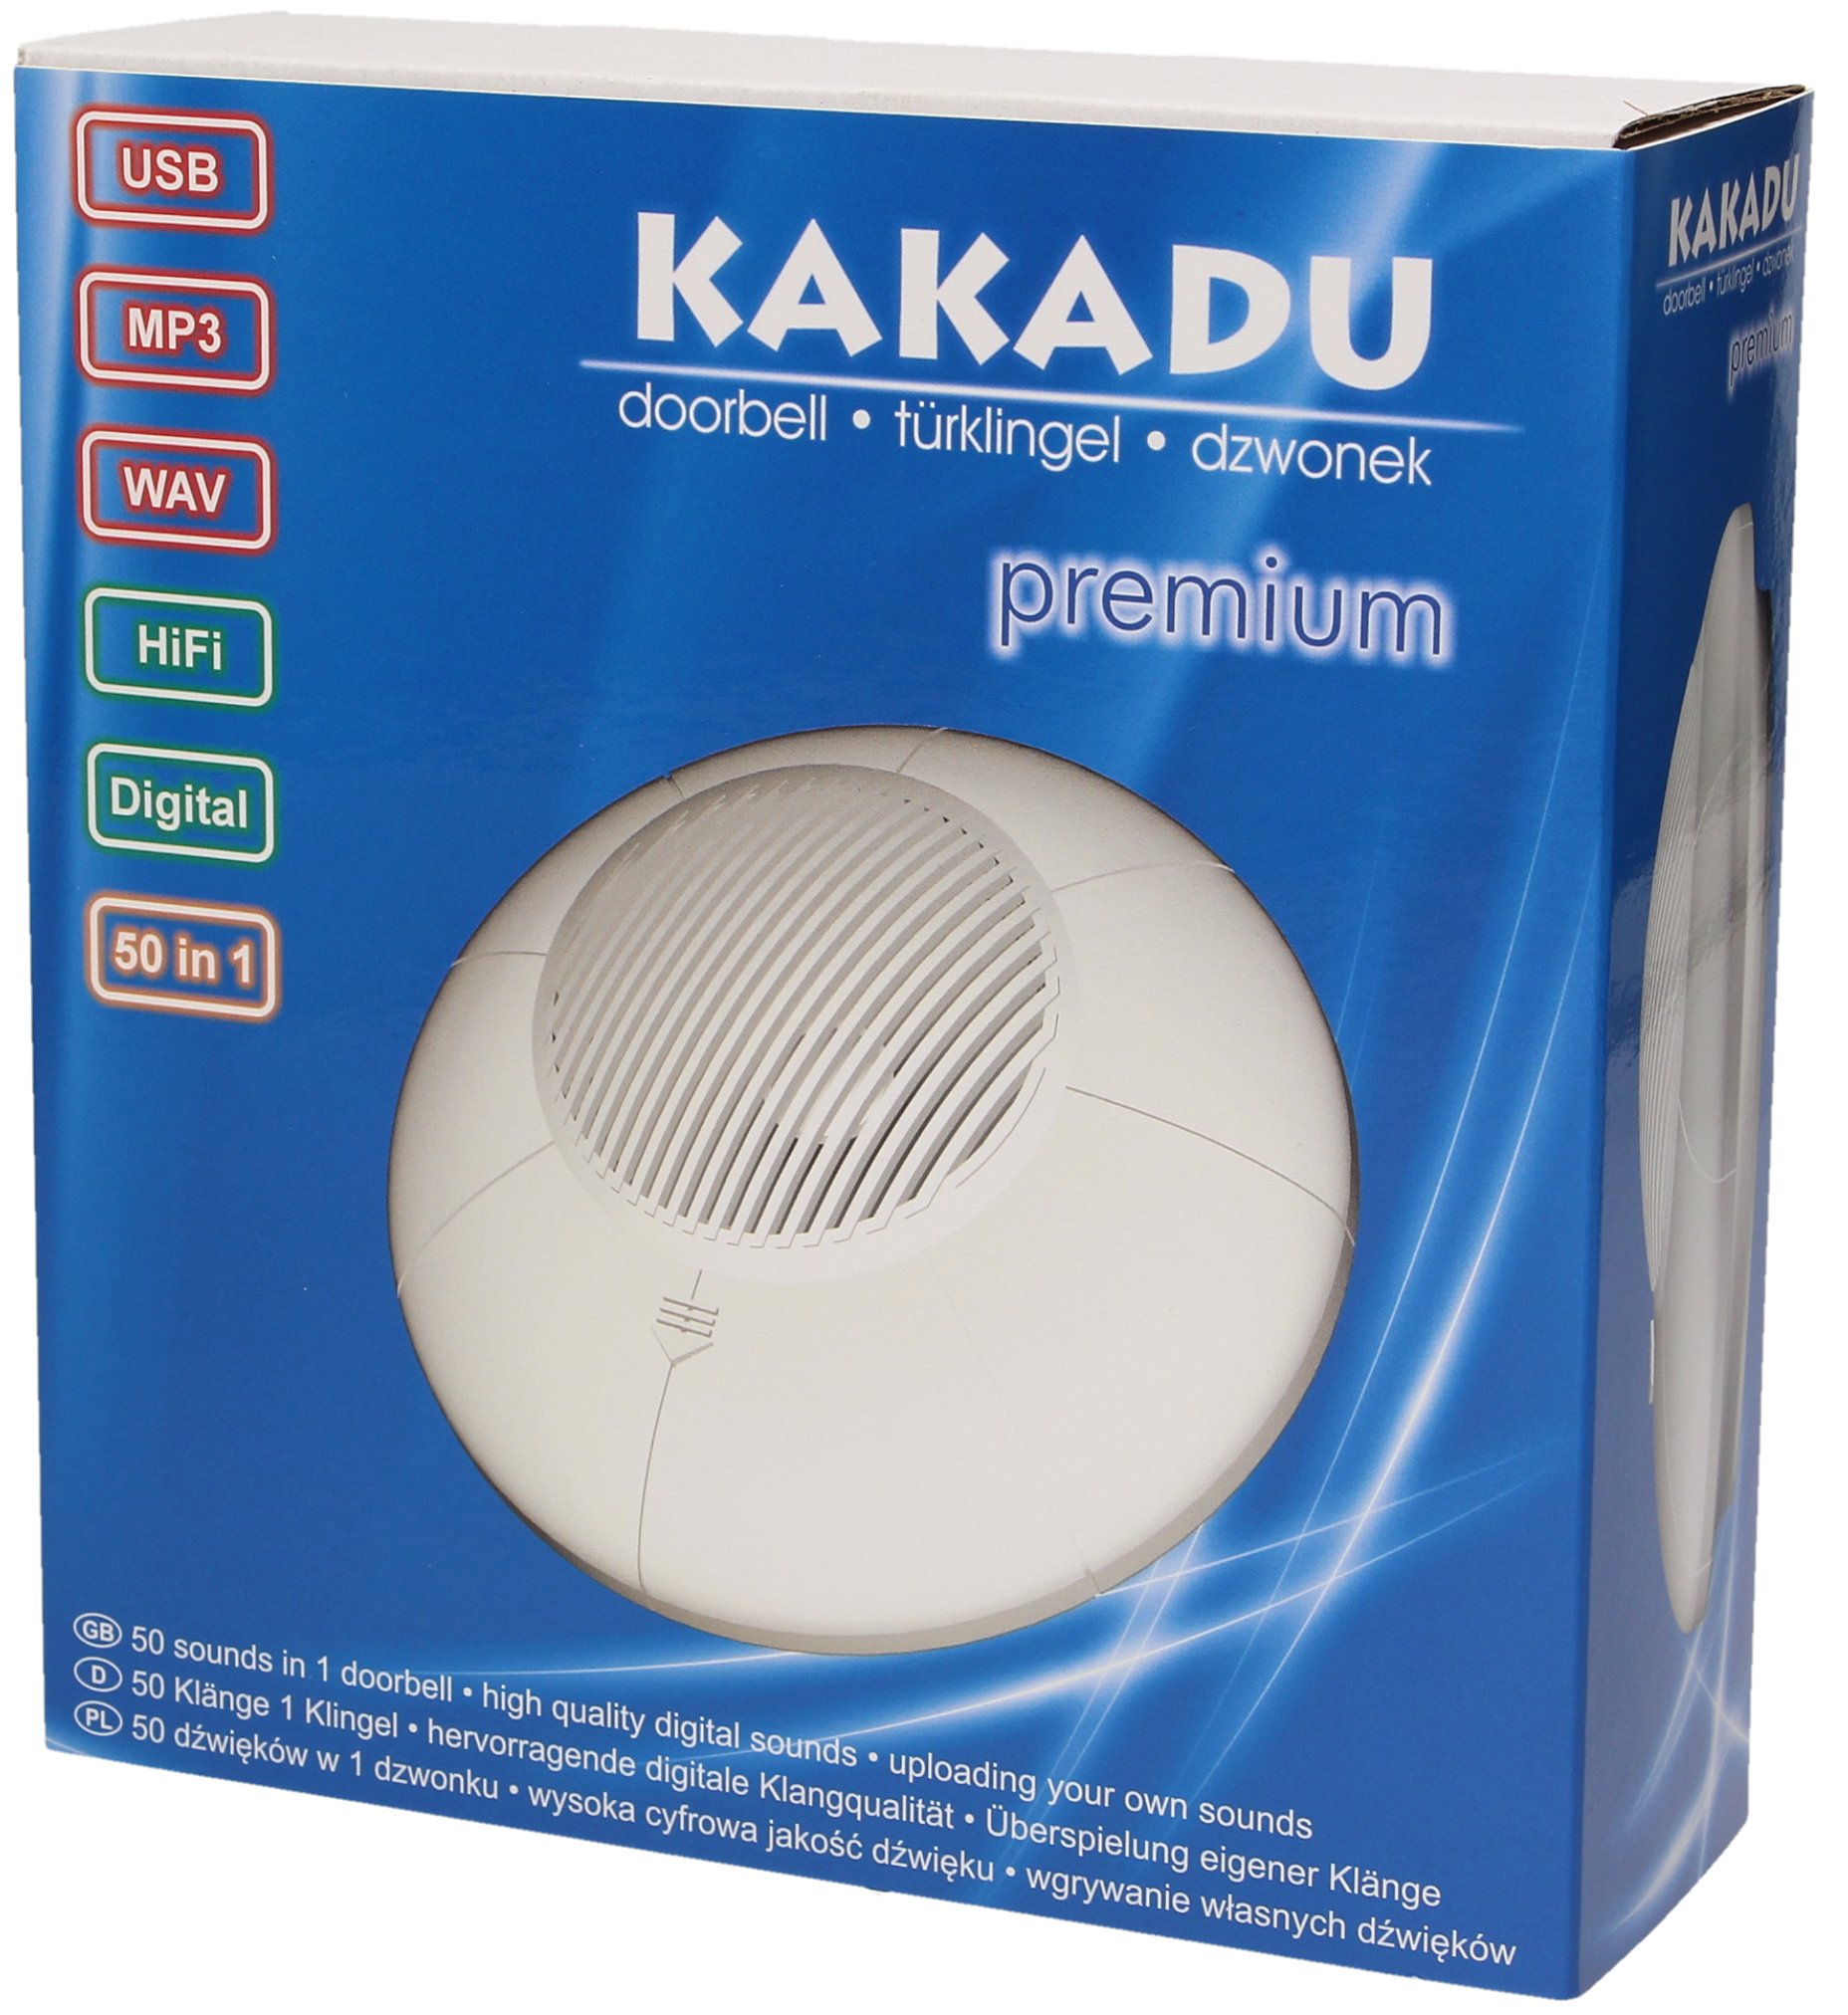 Zdjęcia - Dzwonek do drzwi KAKADU Dzwonek  Premium MP3 Własne Dźwięki kab. Usb 